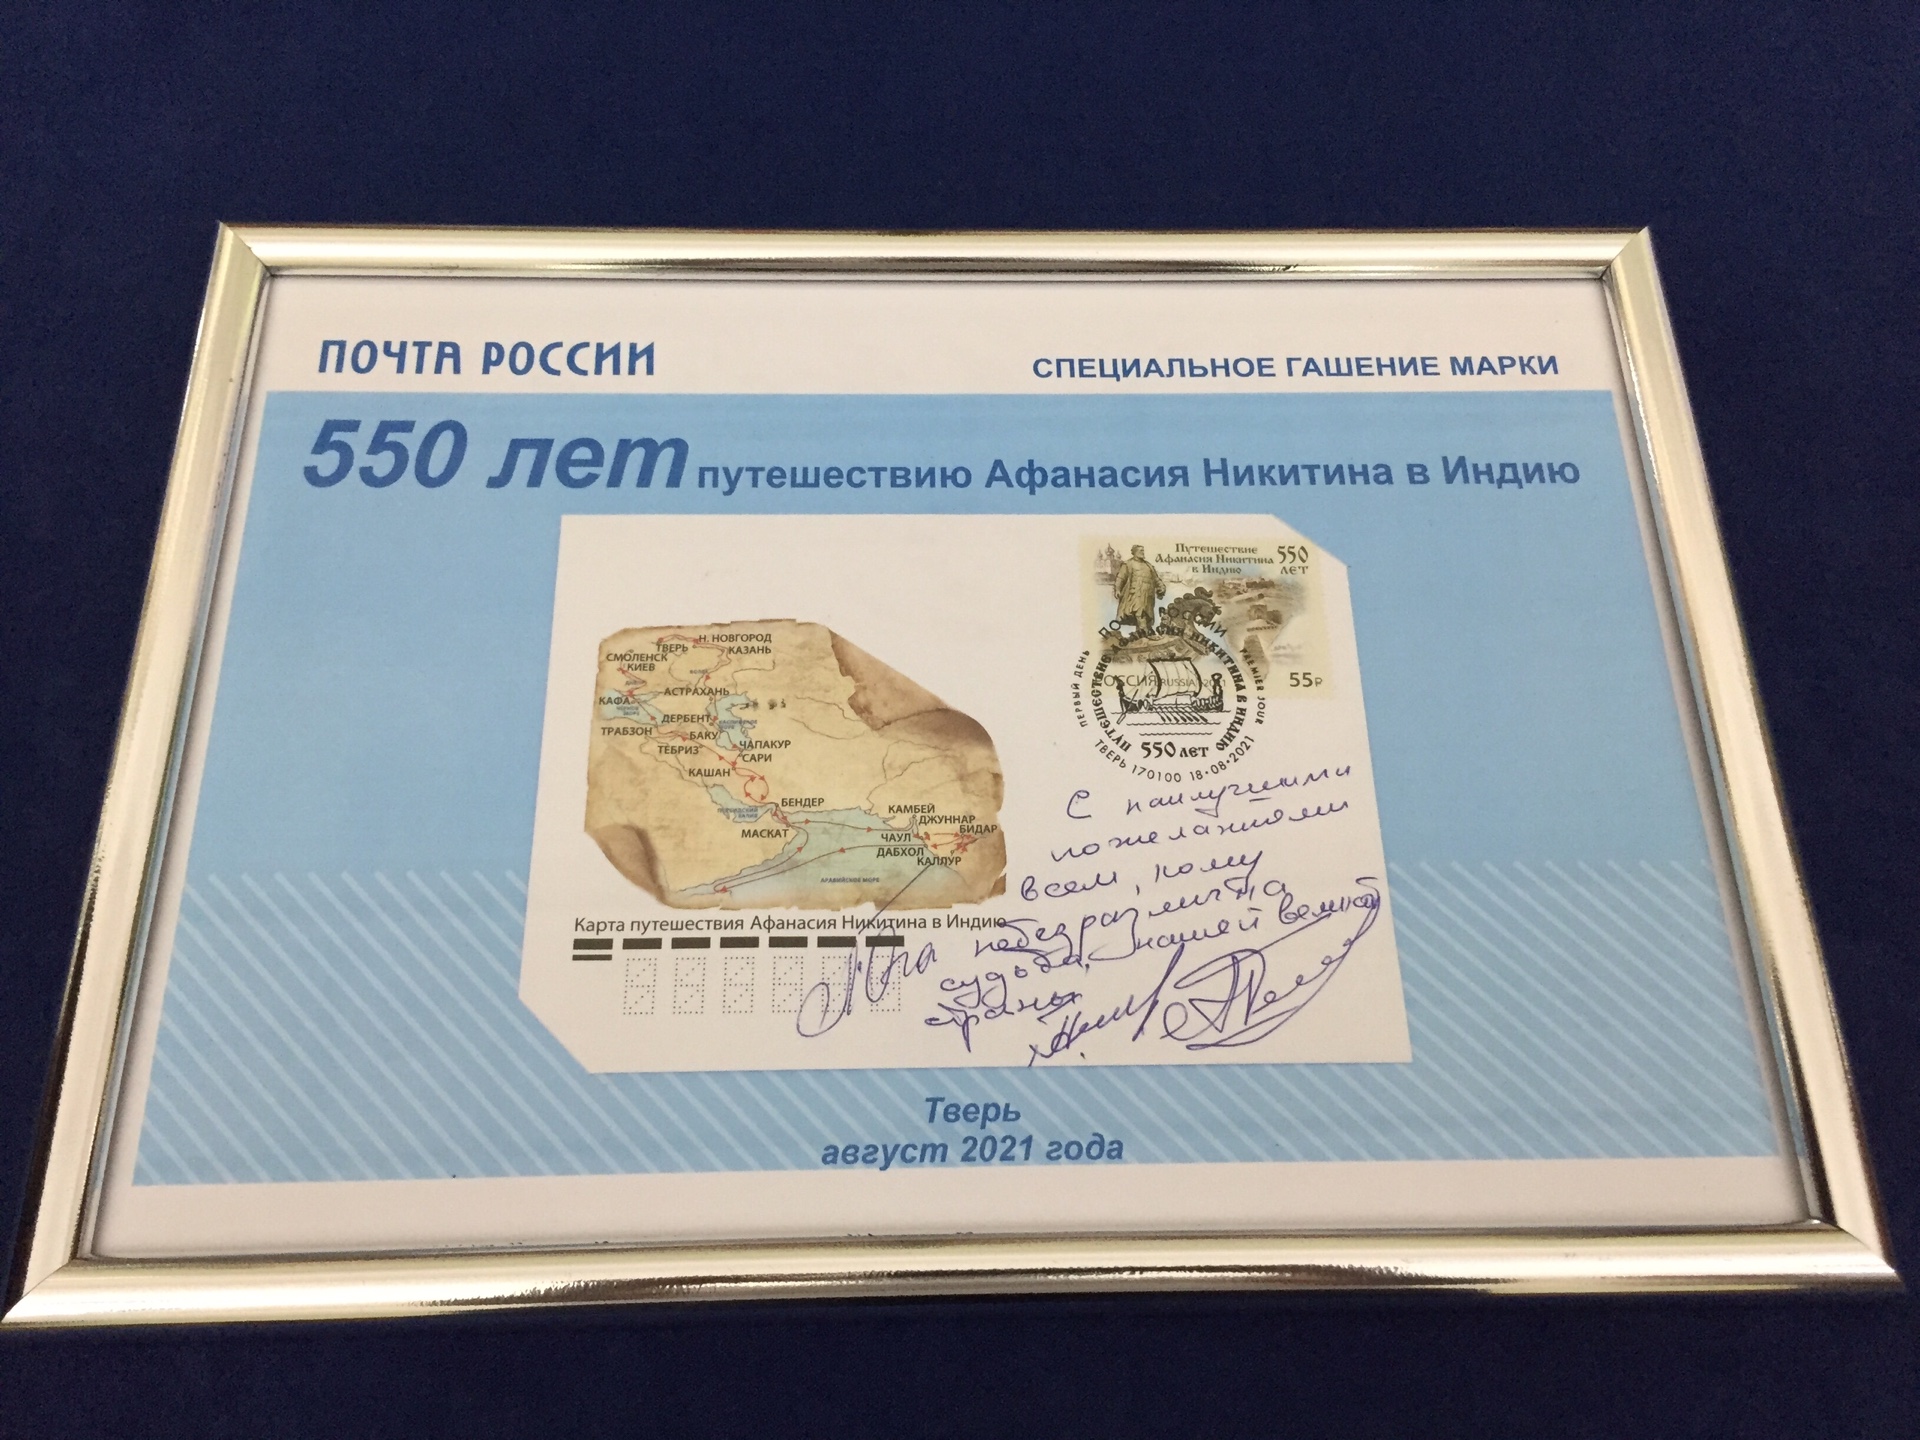 В честь 550-летия путешествия Афанасия Никитина в Индию выпущена почтовая марка